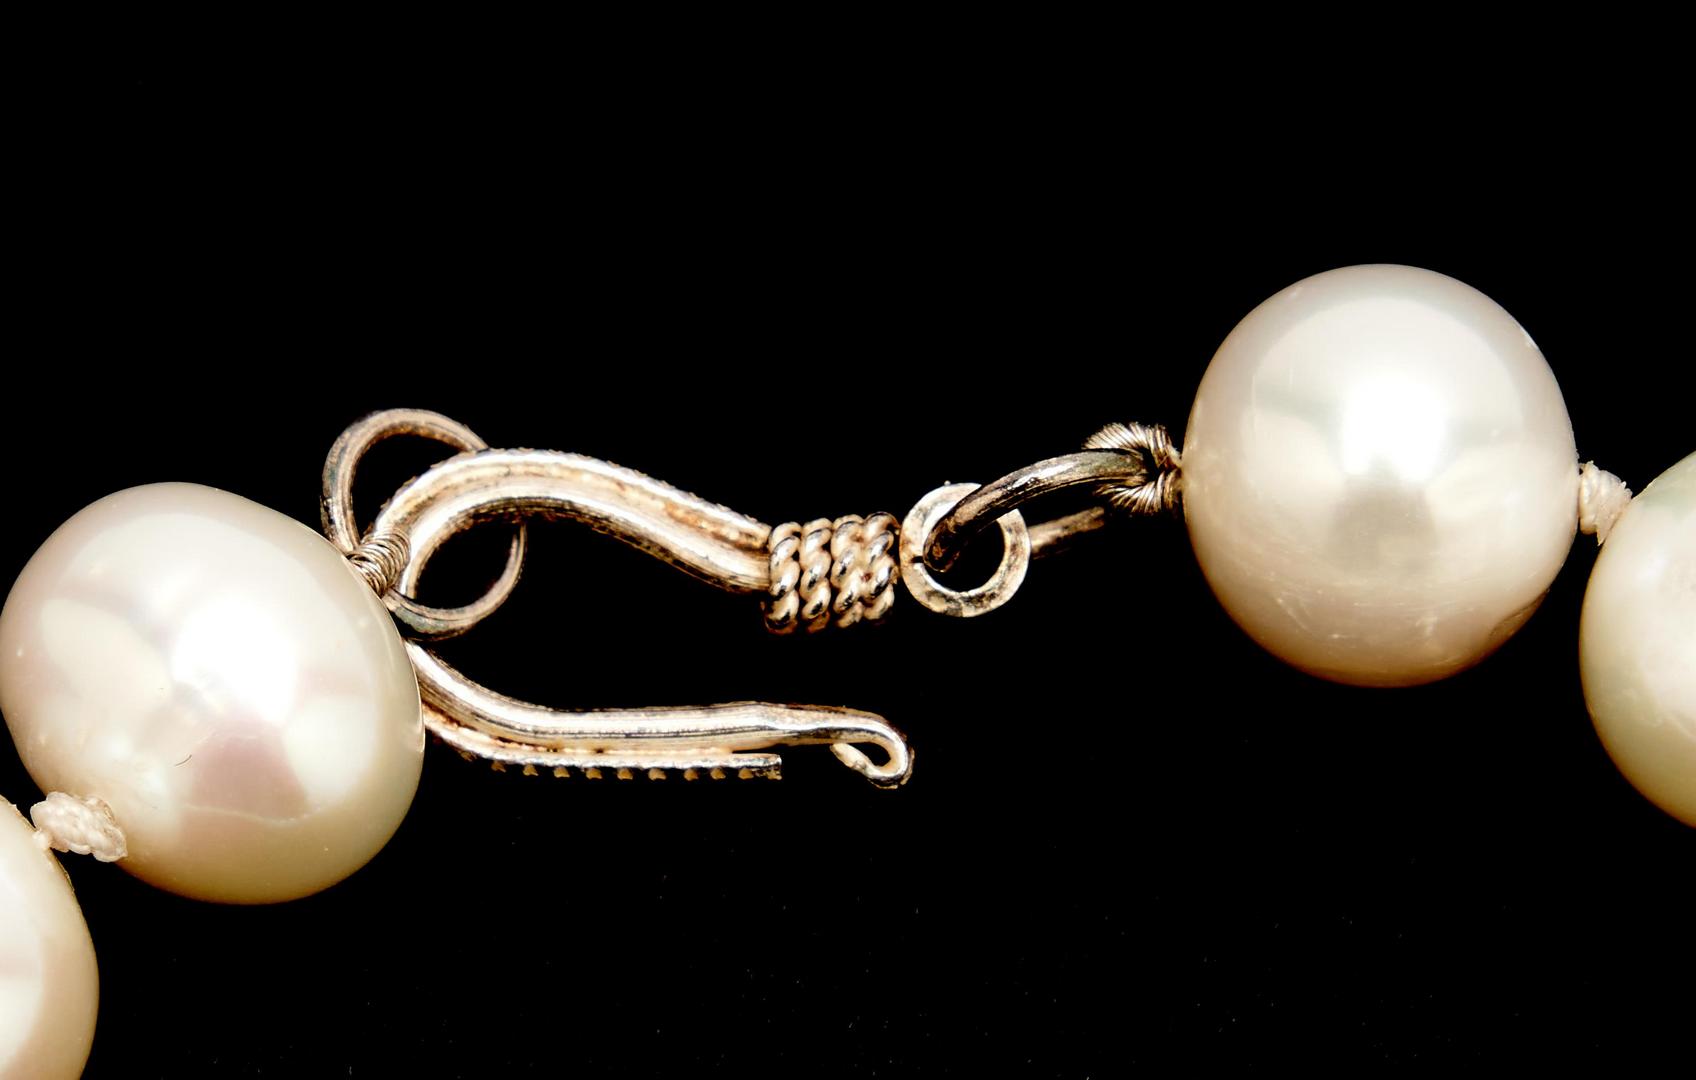 Lot 26: 3 Ladies Pearl Necklaces, 1 Graduated Quartz Necklace, & 2 Pearl Bracelets